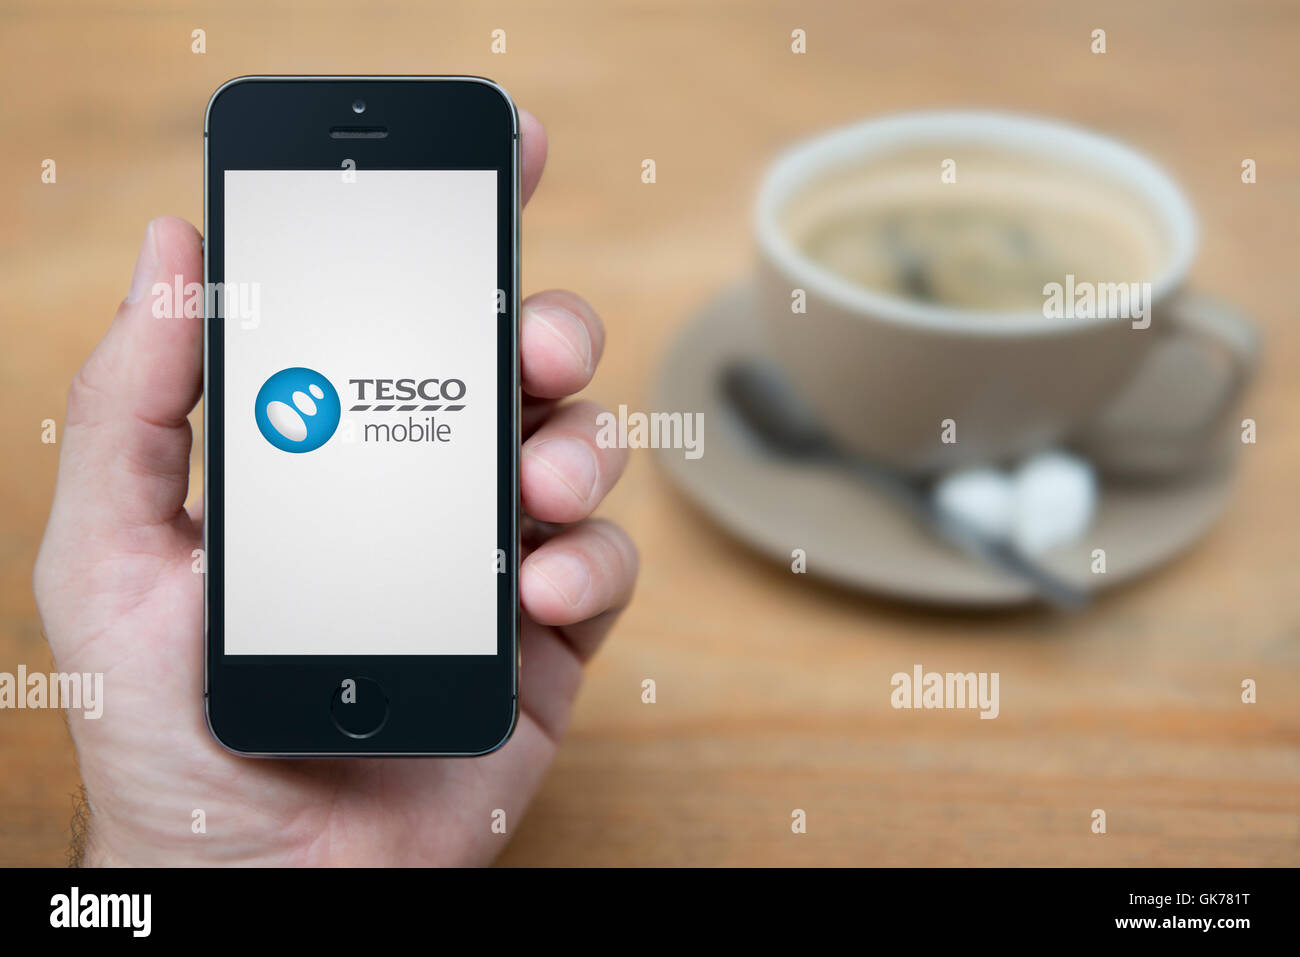 Un homme se penche sur son iPhone qui affiche le logo Mobile Tesco, tandis qu'assis avec une tasse de café (usage éditorial uniquement). Banque D'Images